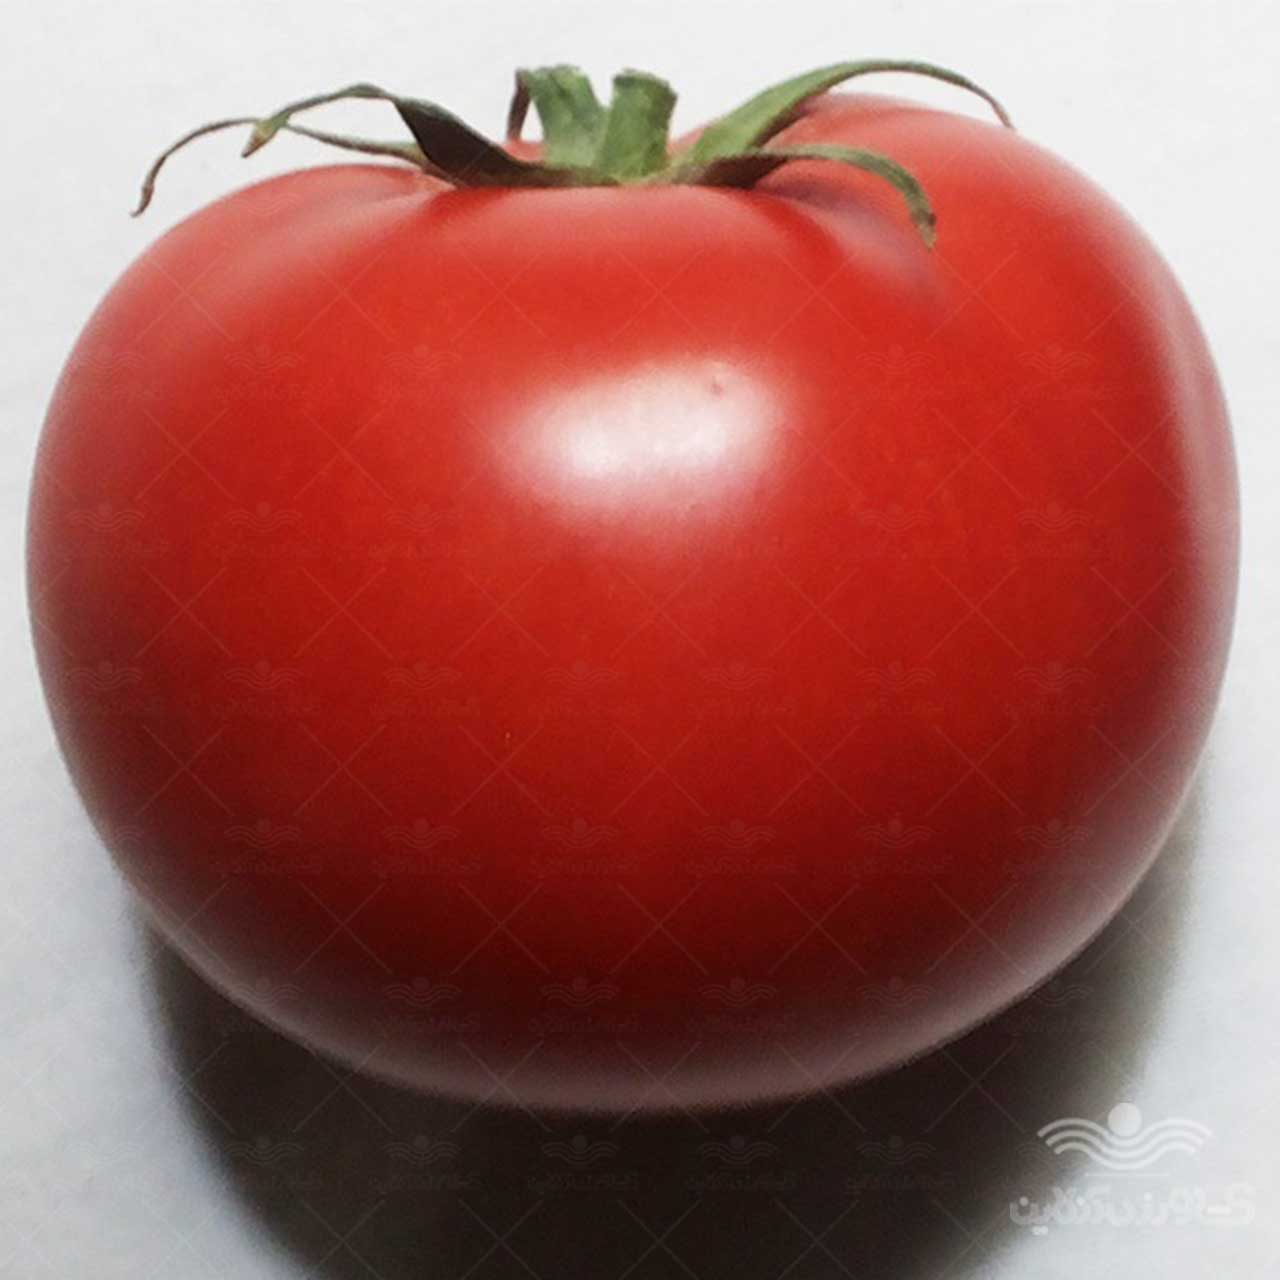 بذر گوجه فرنگی گرد کارون هیبرید F1 از شرکت نیکرسون هلند 5000 عددی 2